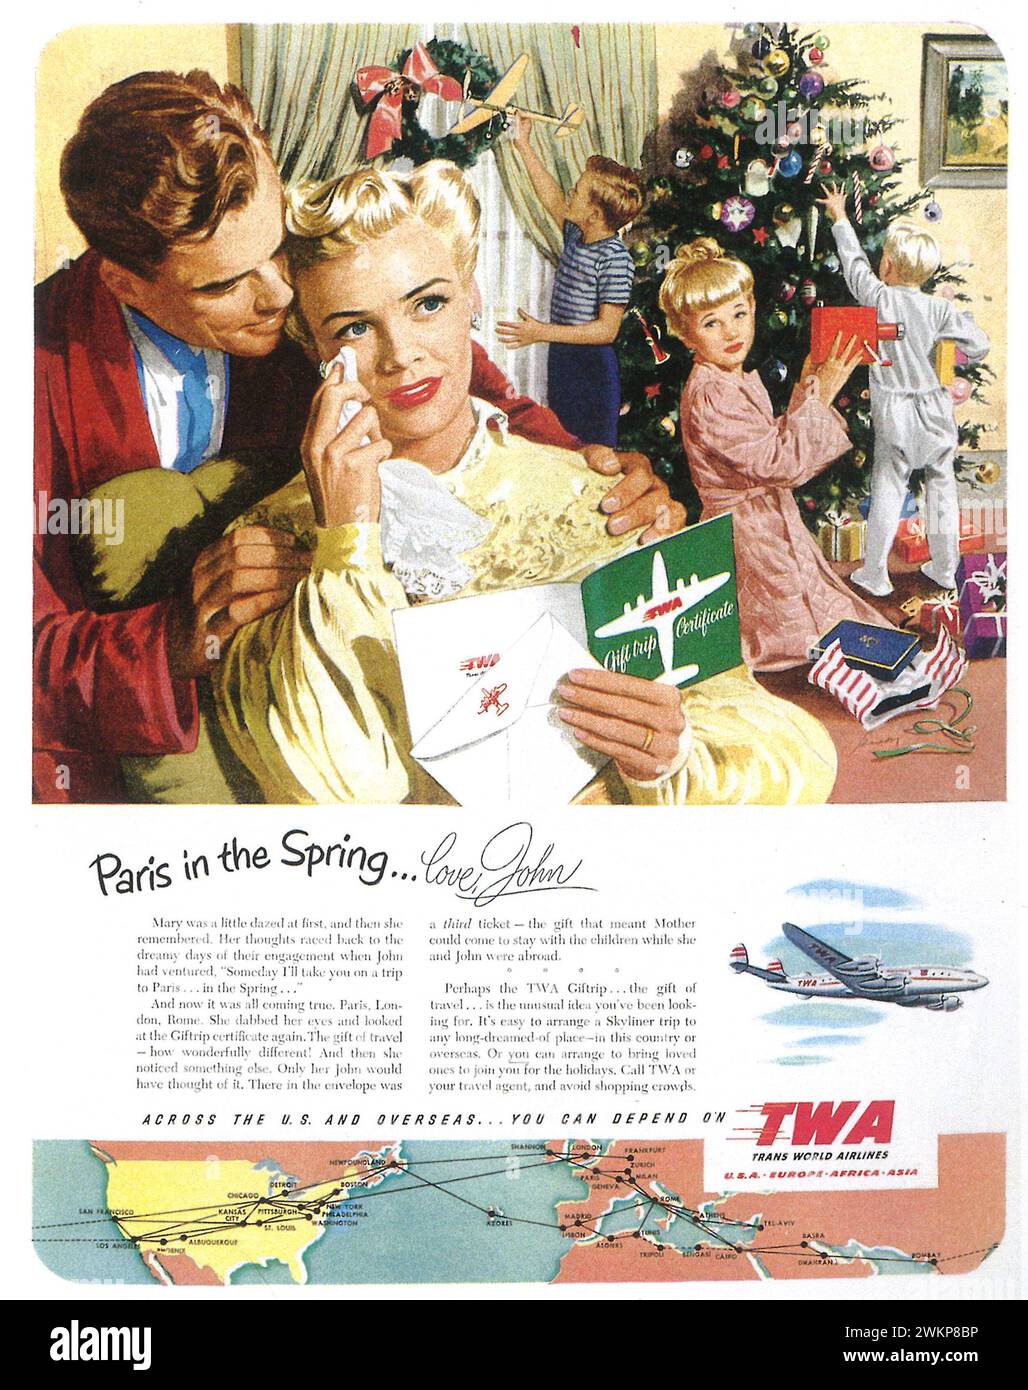 Annuncio a stampa 1950 TWA. Parigi in primavera... Foto Stock